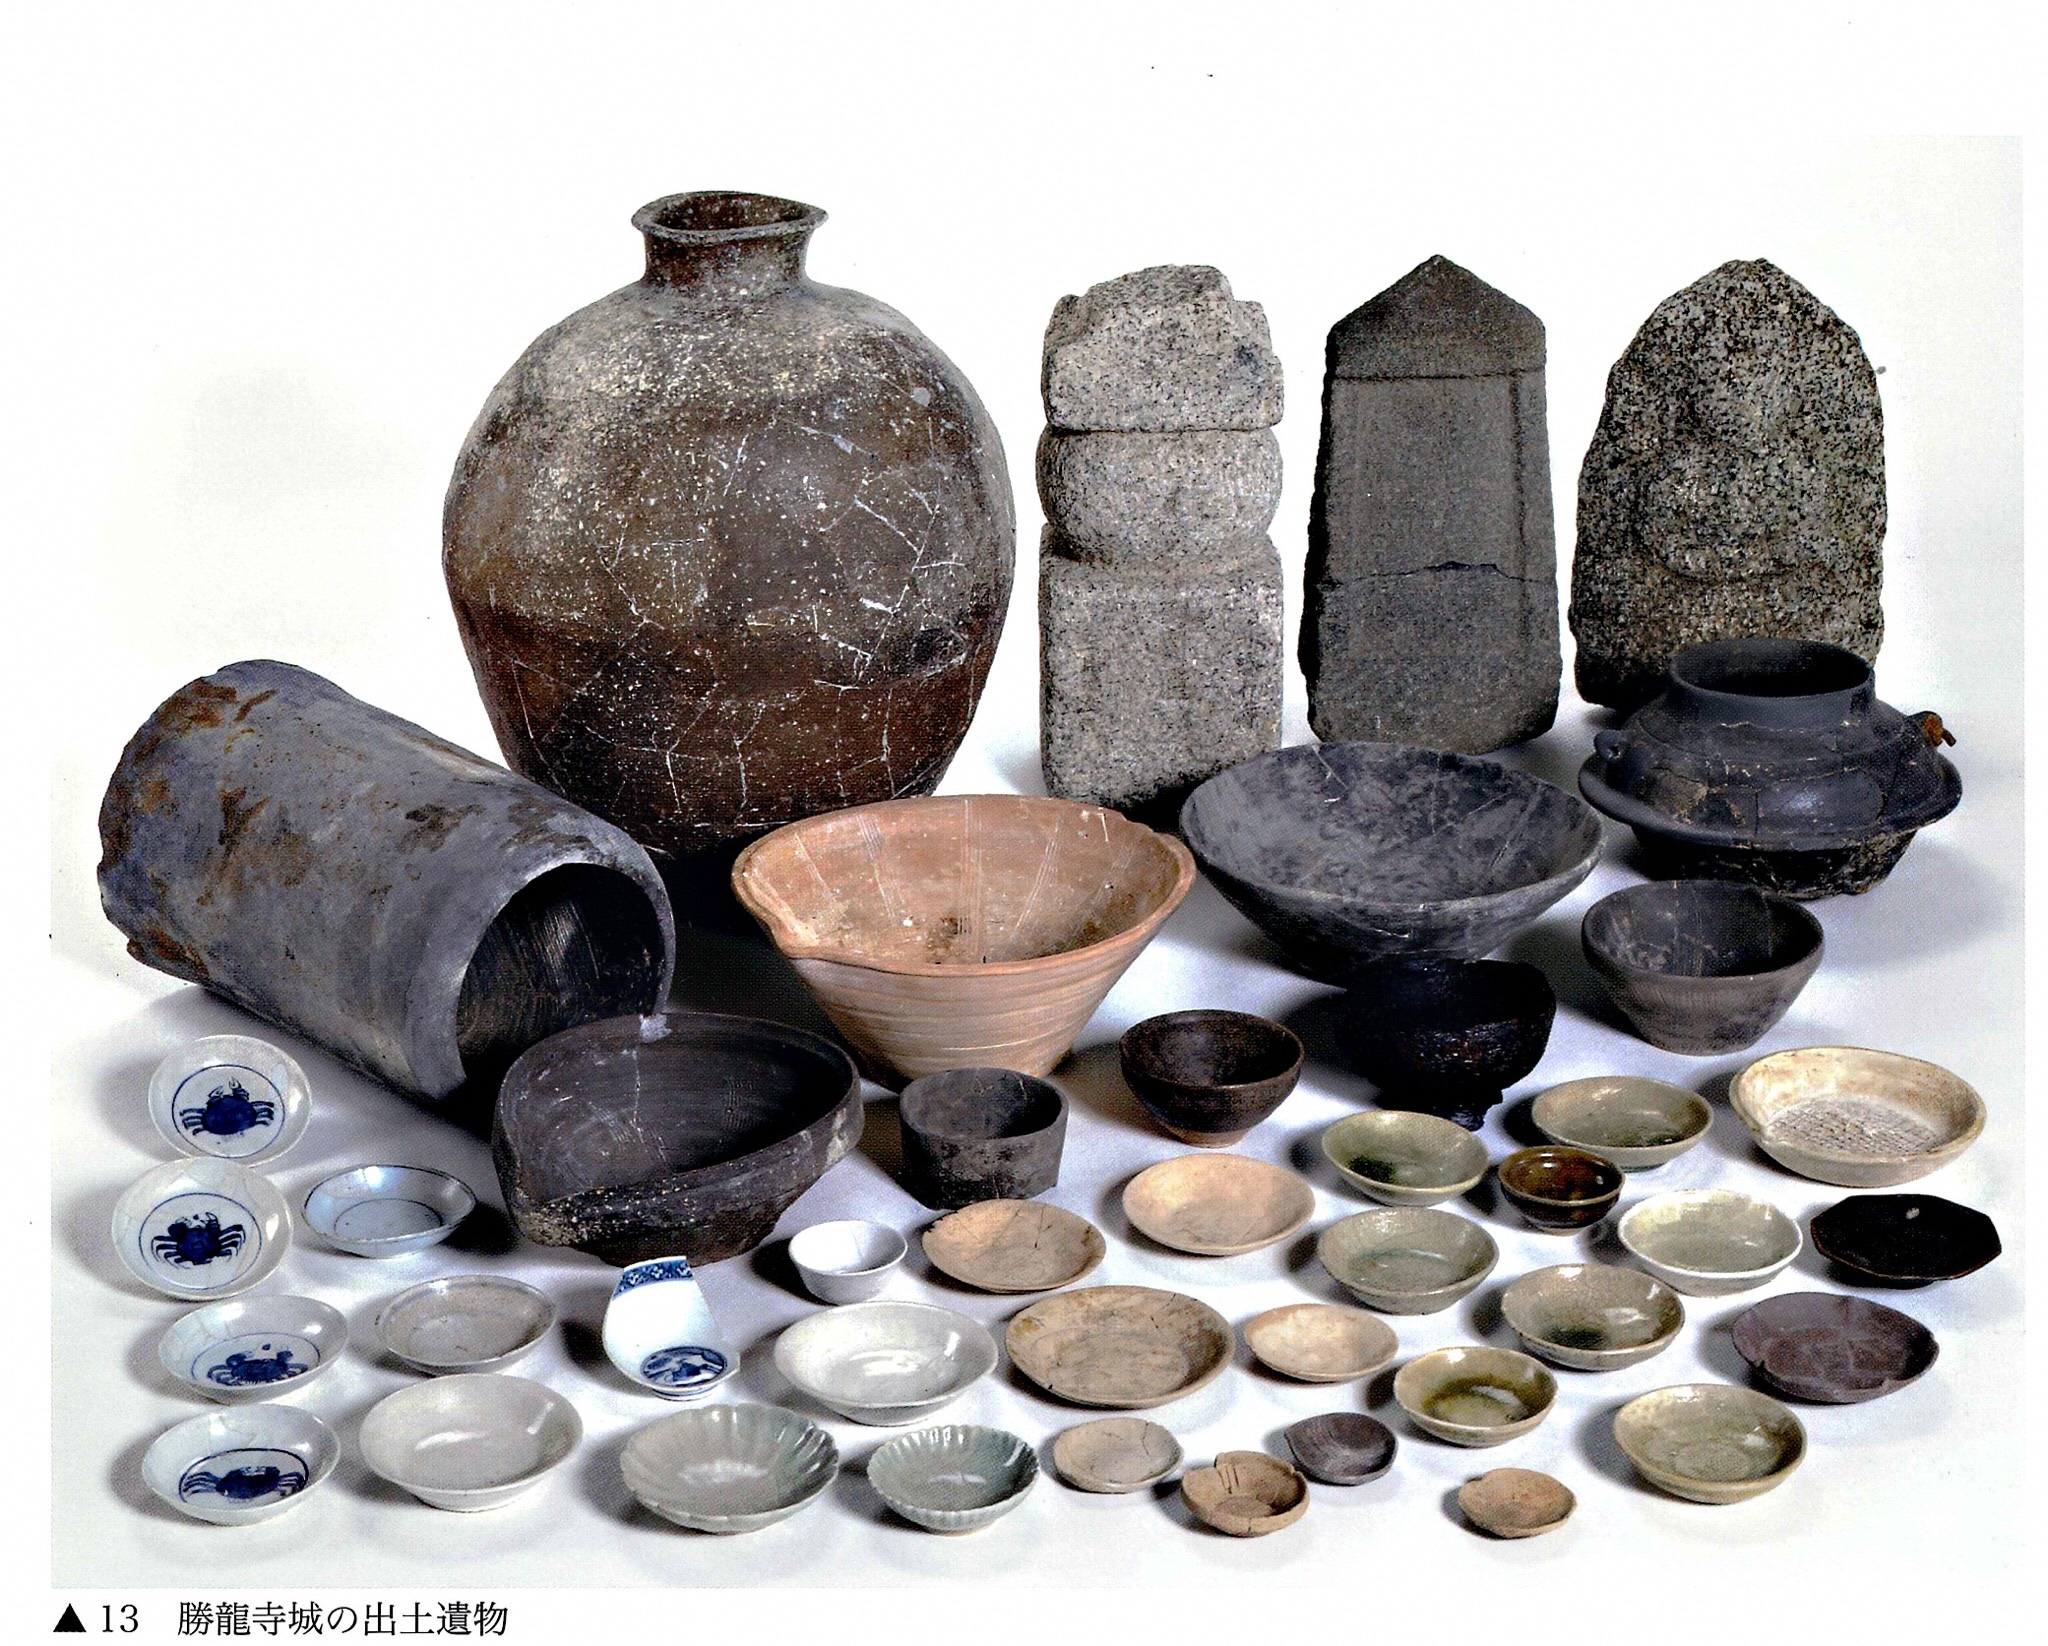 勝龍寺城から出土した茶道具類